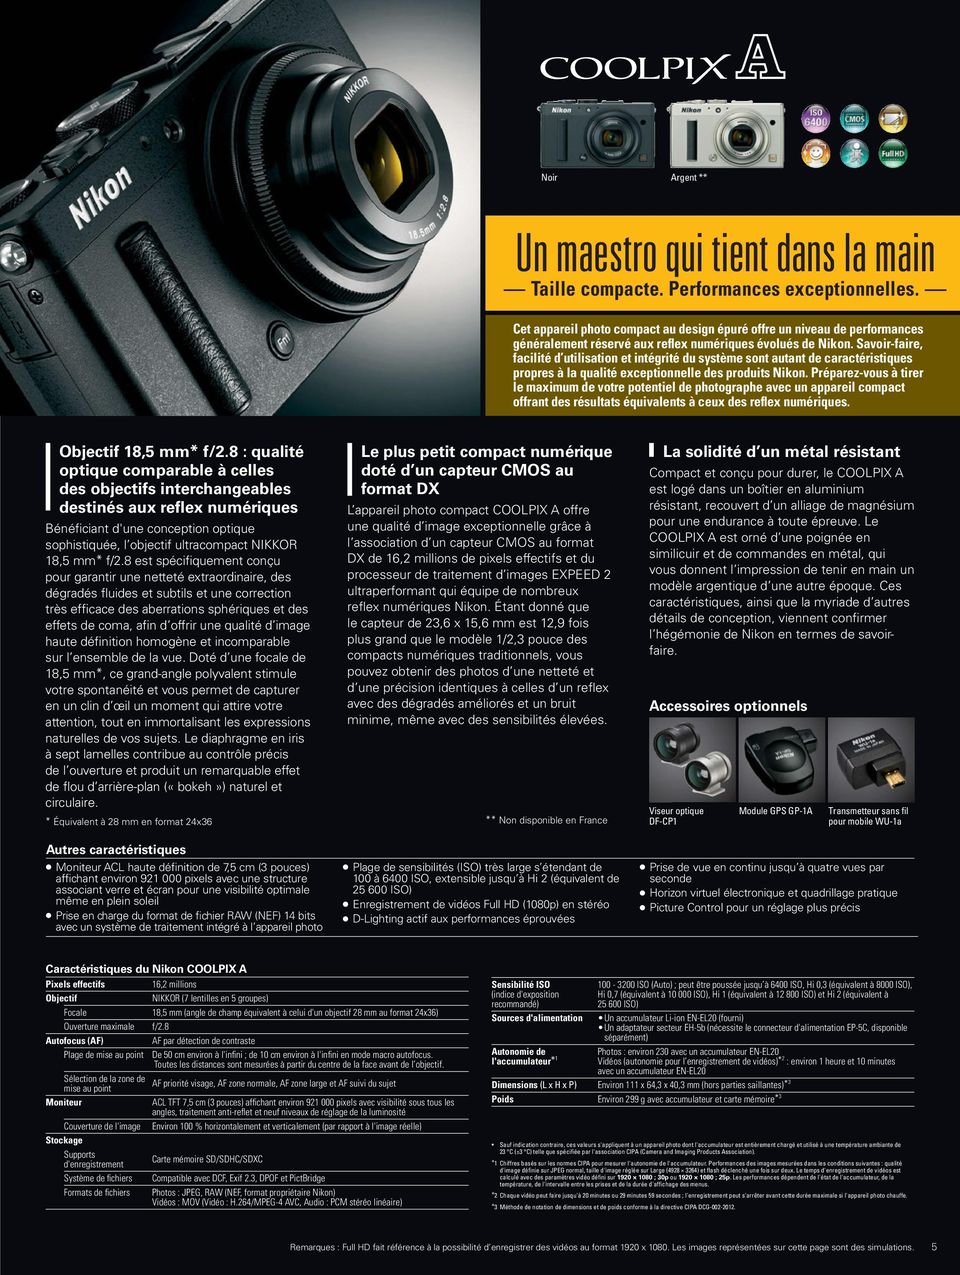 D-SLR s models. évolués Its craftsmanship, de Nikon.